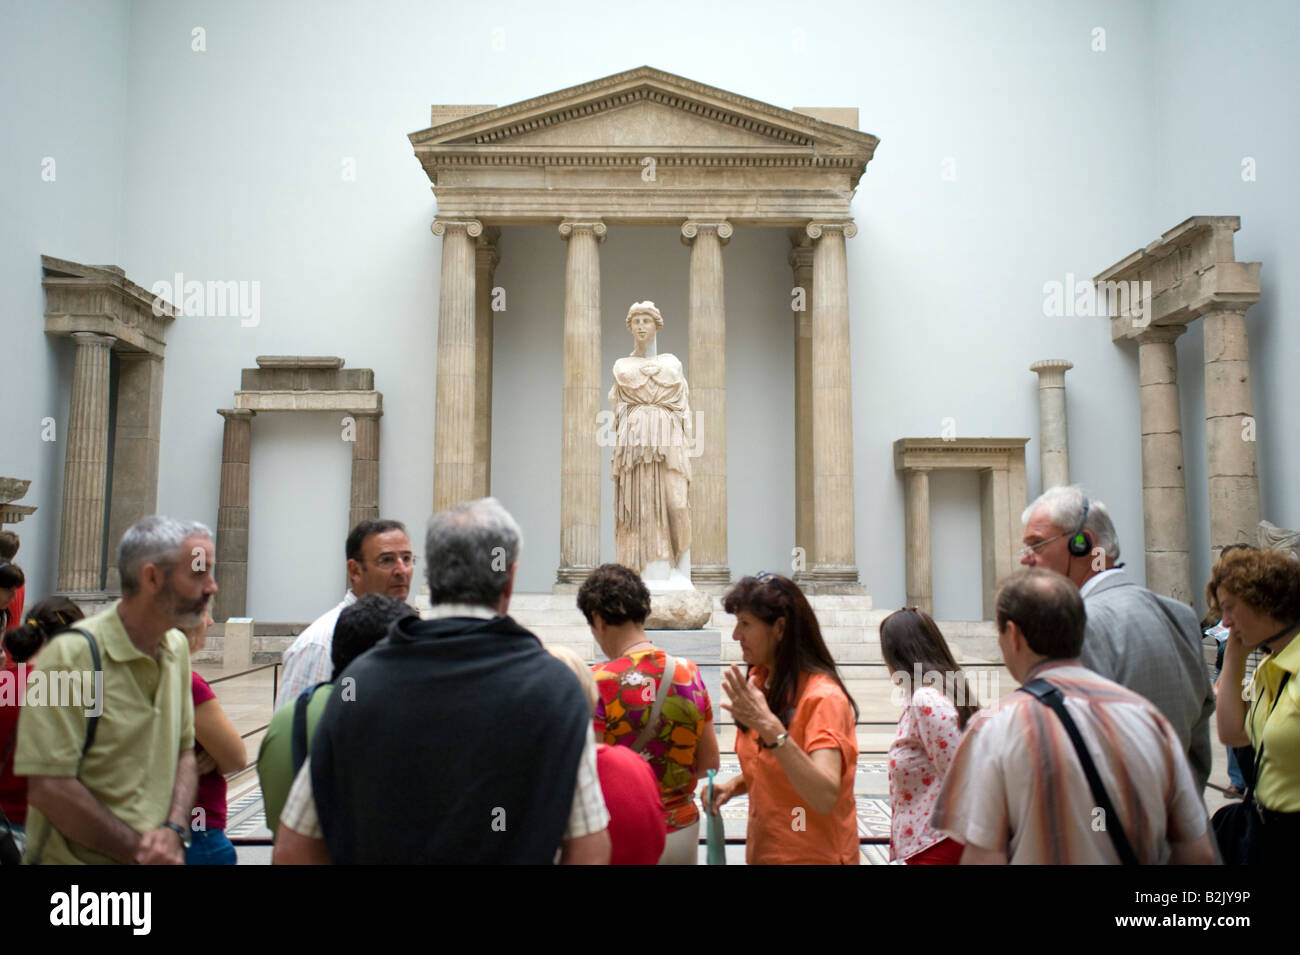 Les visiteurs admirer les anciennes reliques à l'intérieur célèbre Musée Pergamon de Berlin Allemagne 2008 Banque D'Images